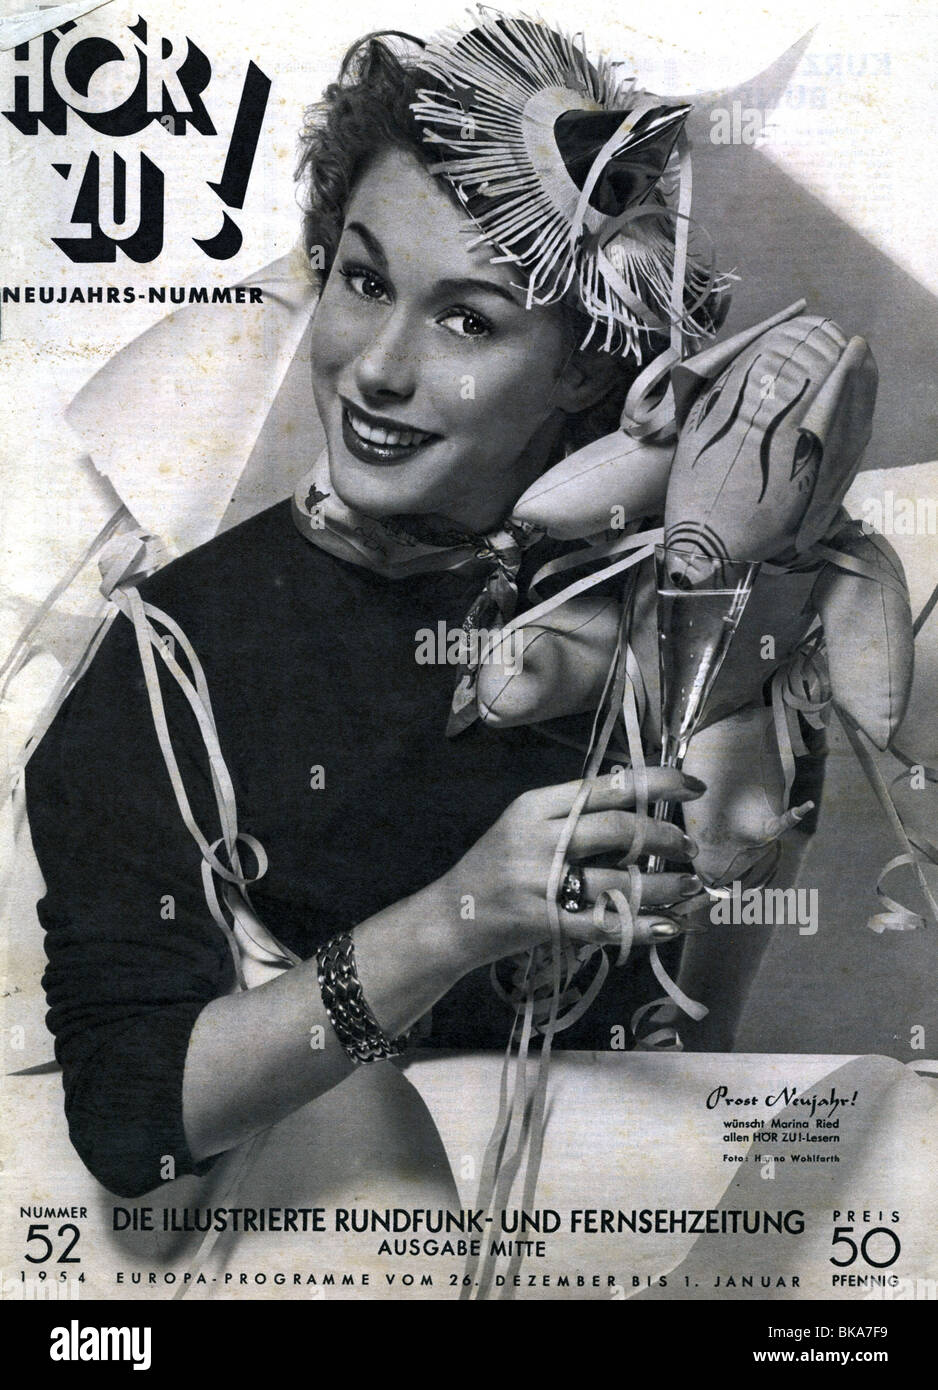 Riviste / riviste, 1954, 'Hör Zu', numero 52, titolo con Marina Ried, 'Prost Neujahr' (Felice anno nuovo), edizione Hamburg Mitte, , Foto Stock